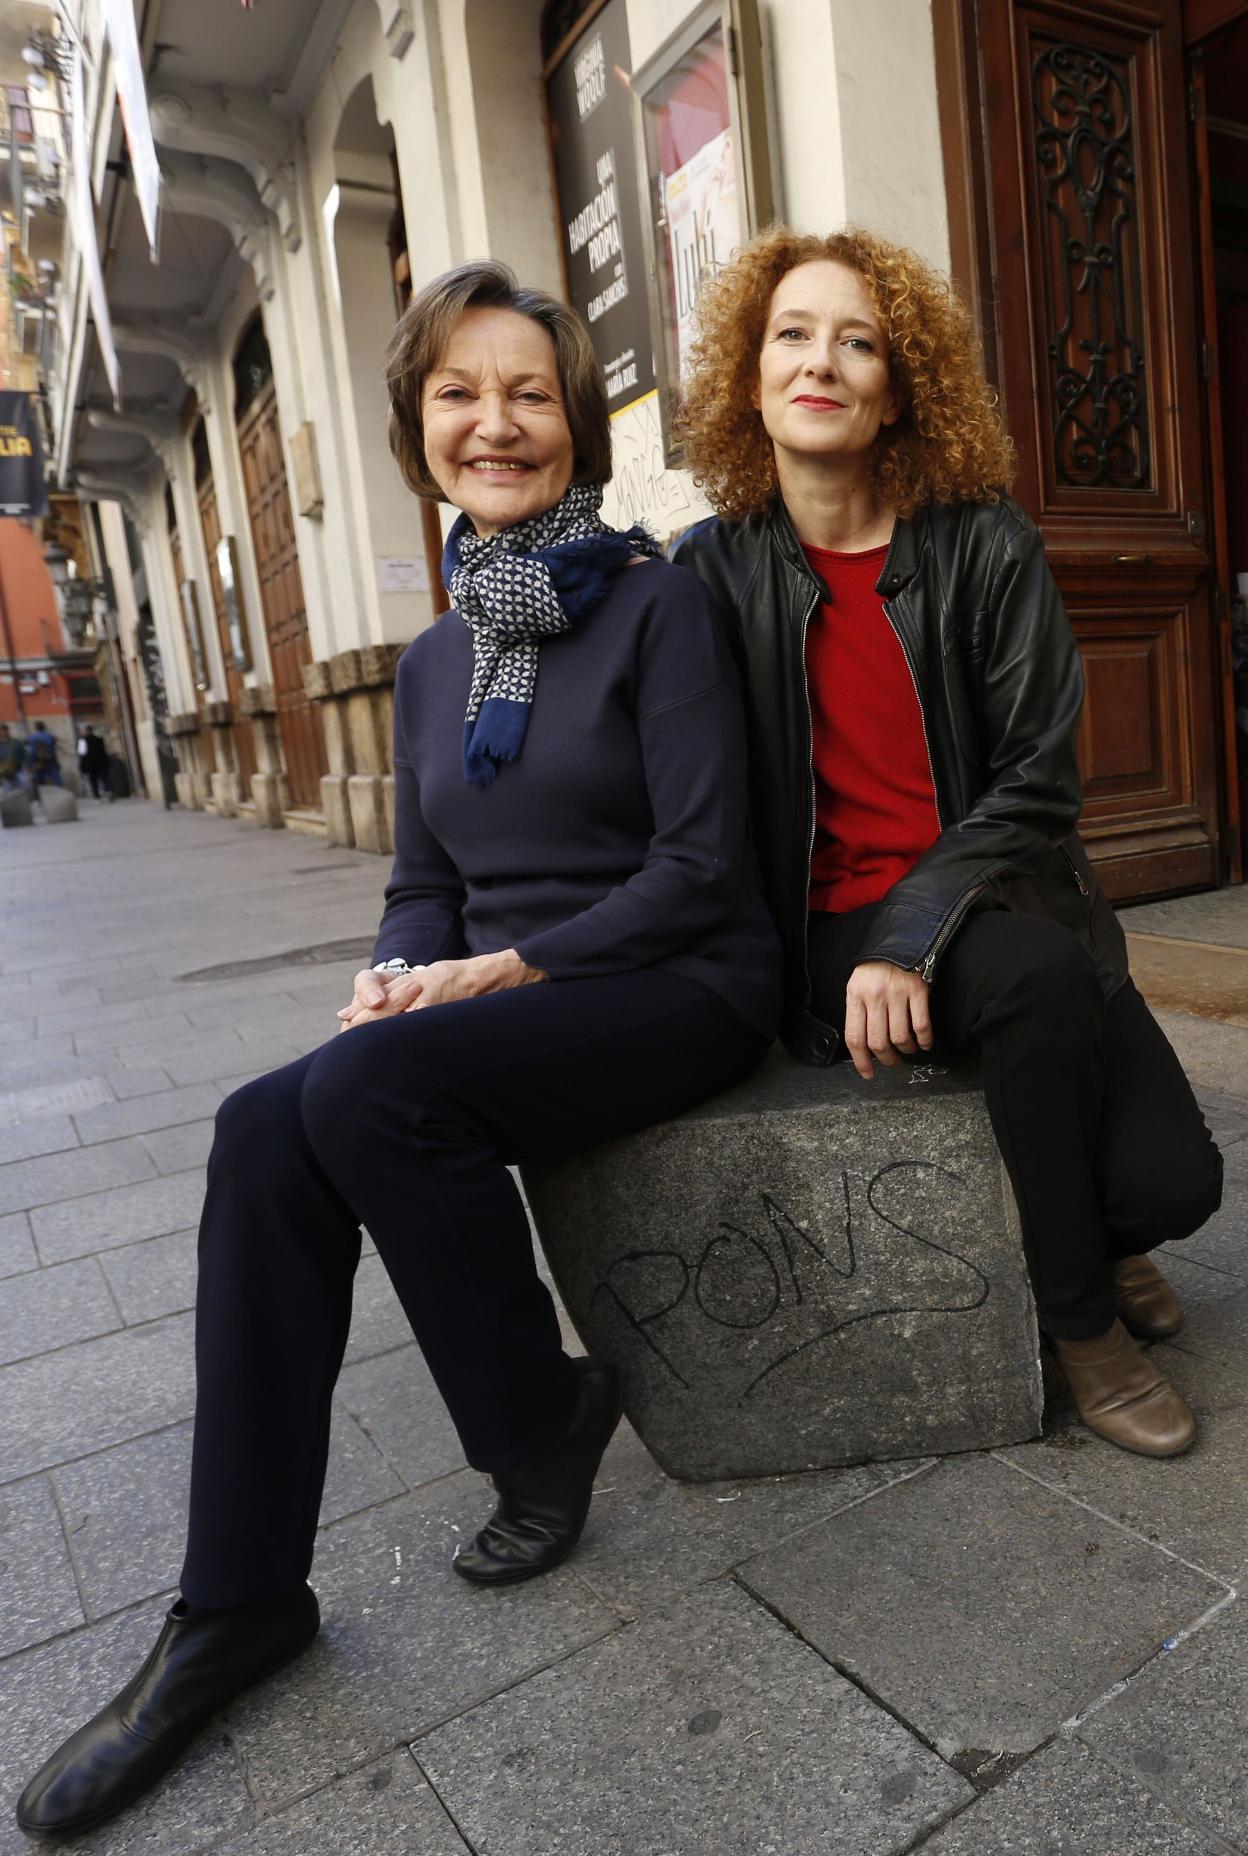 La directora de la obra, María Ruiz, y la protagonista, Clara Sanchis, frente al Teatro Talía. LP